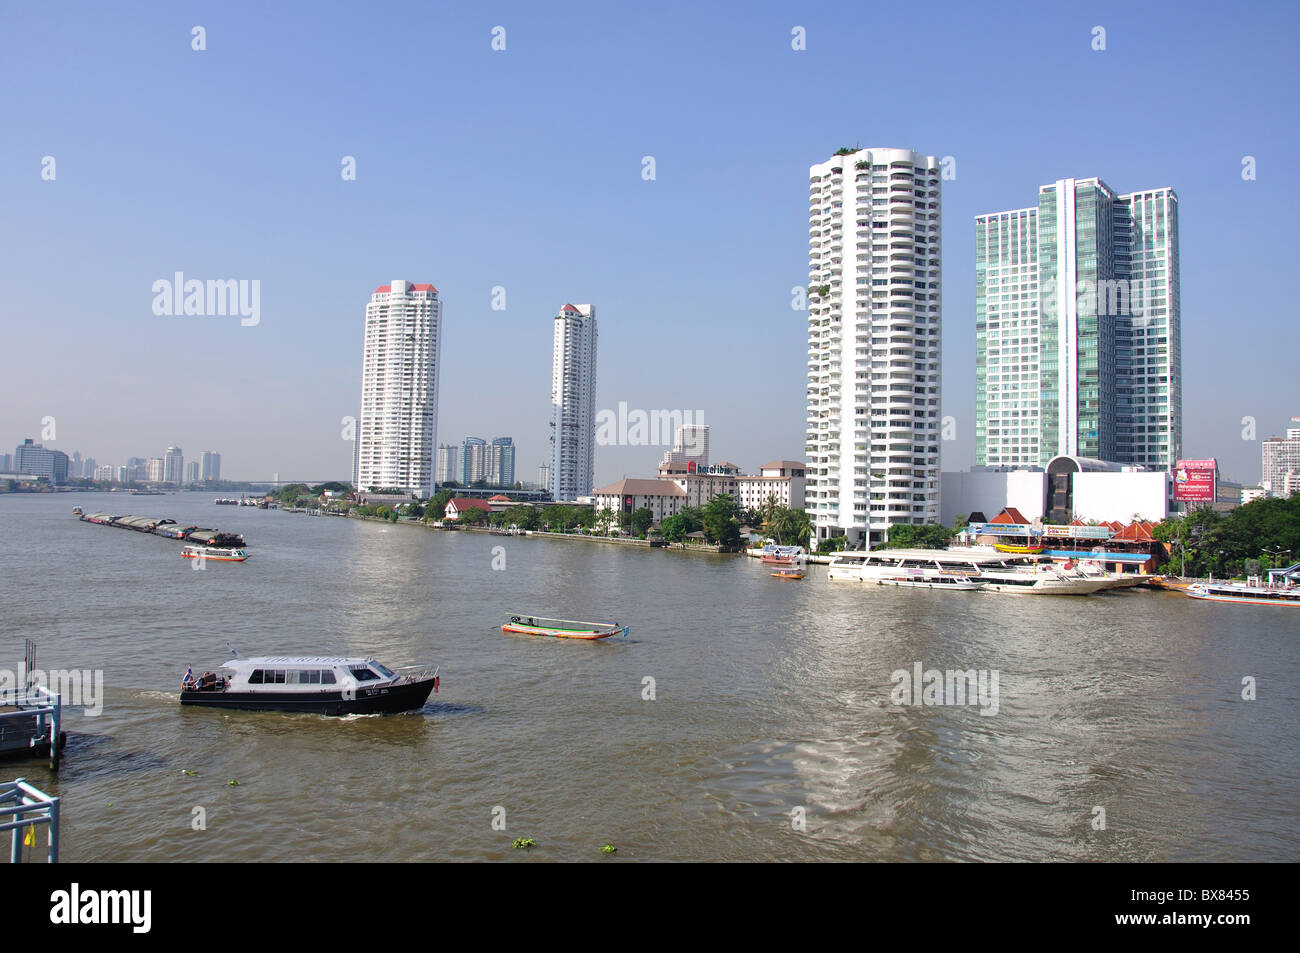 River boats on Chao Phraya River from Bang Rak District, Bangkok, Thailand Stock Photo